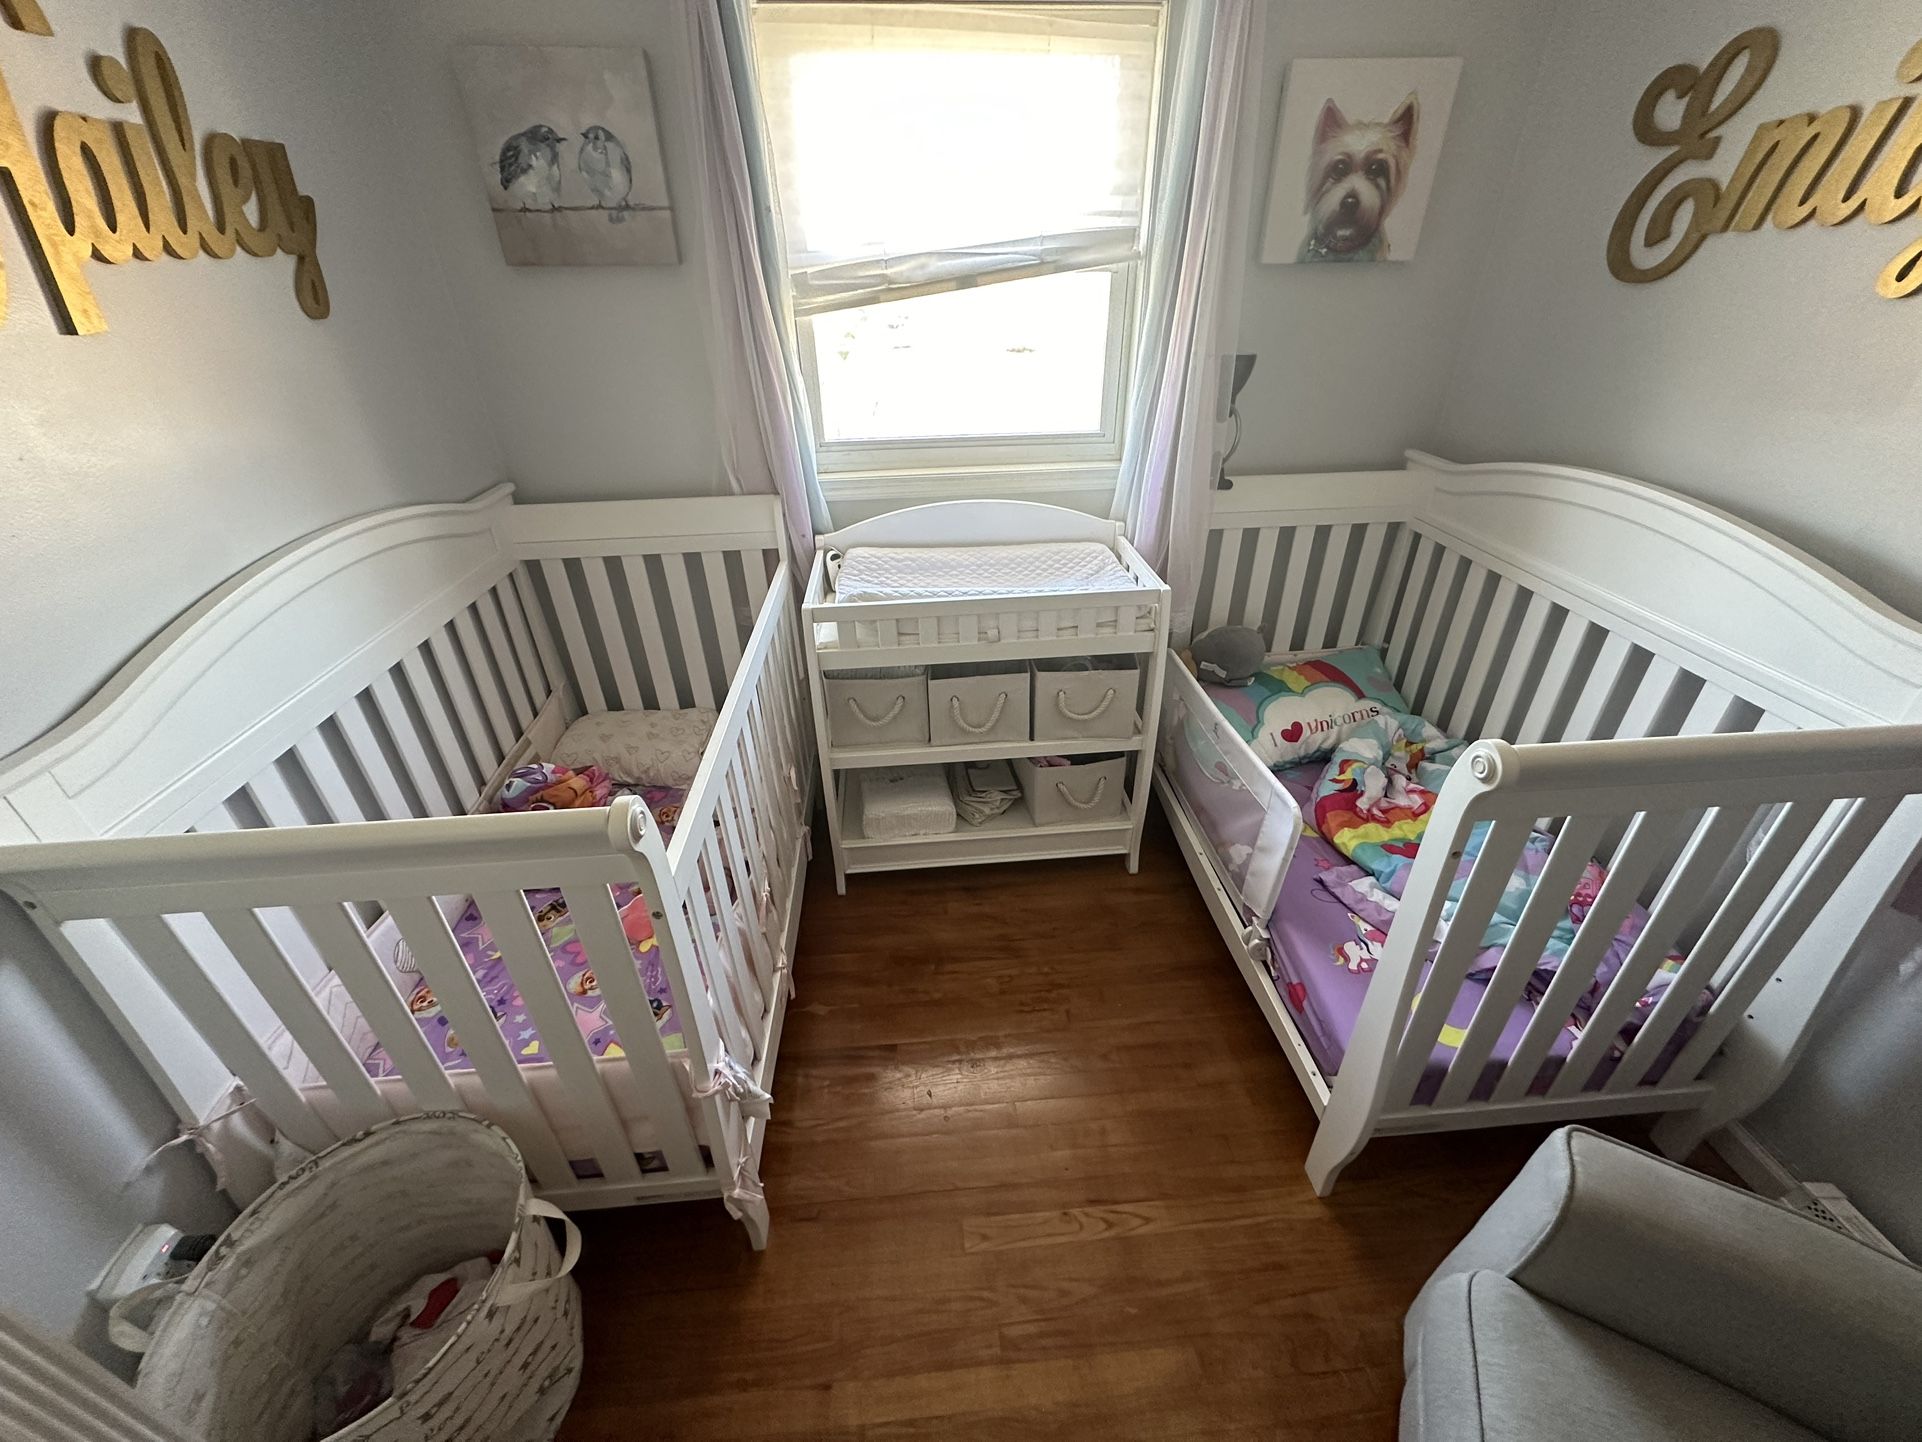 Infant/Toddler Crib